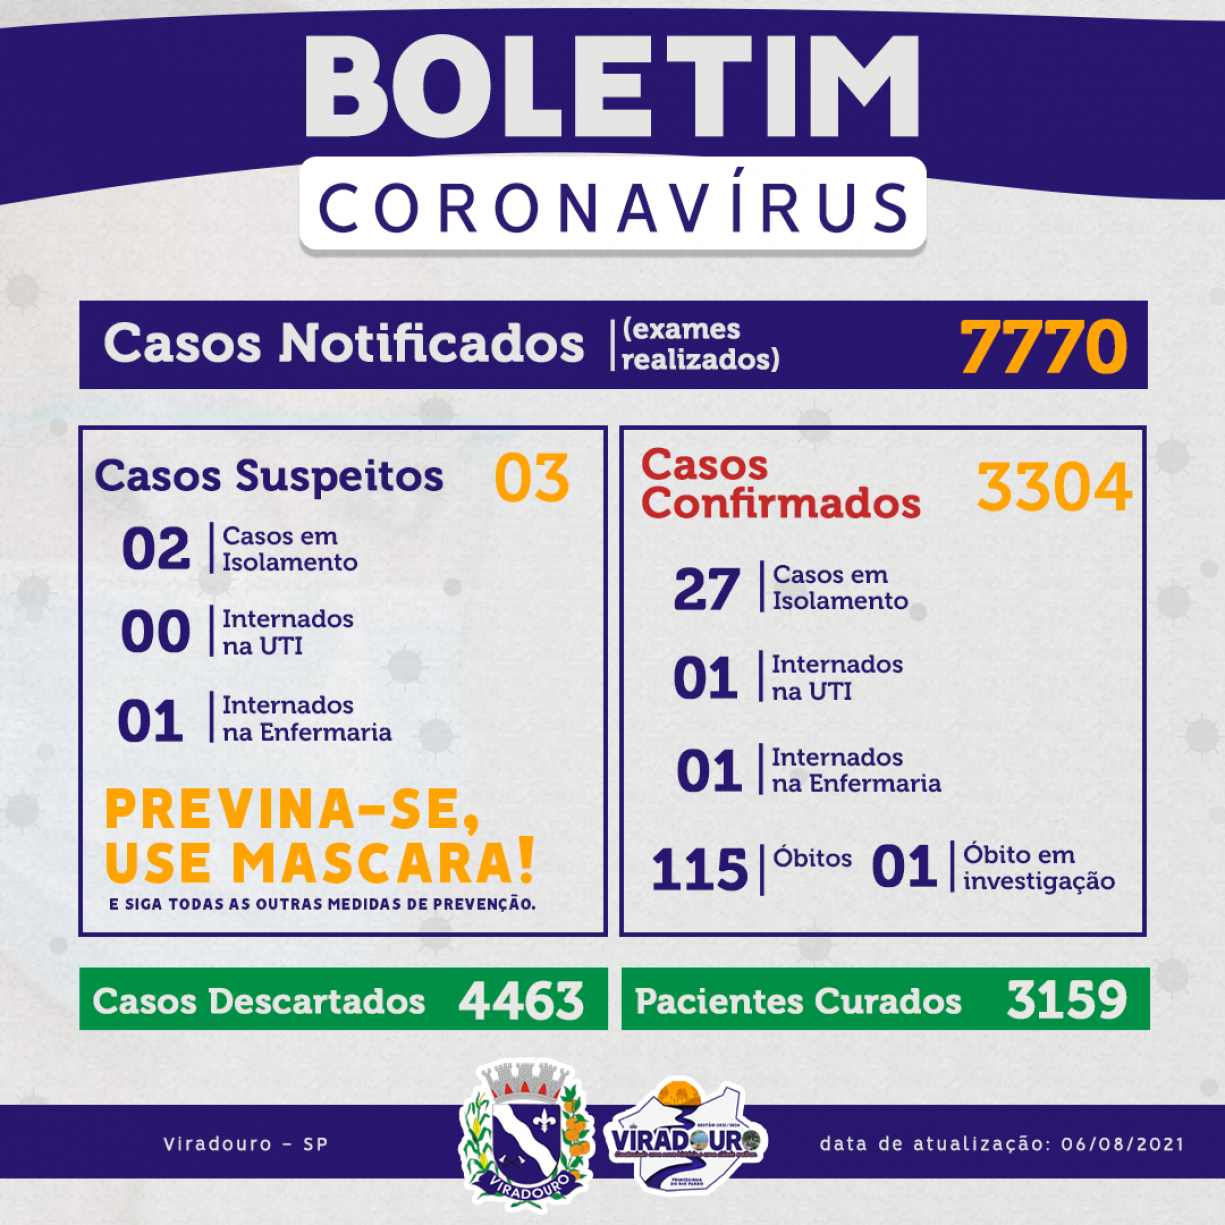 CORONAVÍRUS: BOLETIM EPIDEMIOLÓGICO (ATUALIZAÇÃO 06/08/2021)